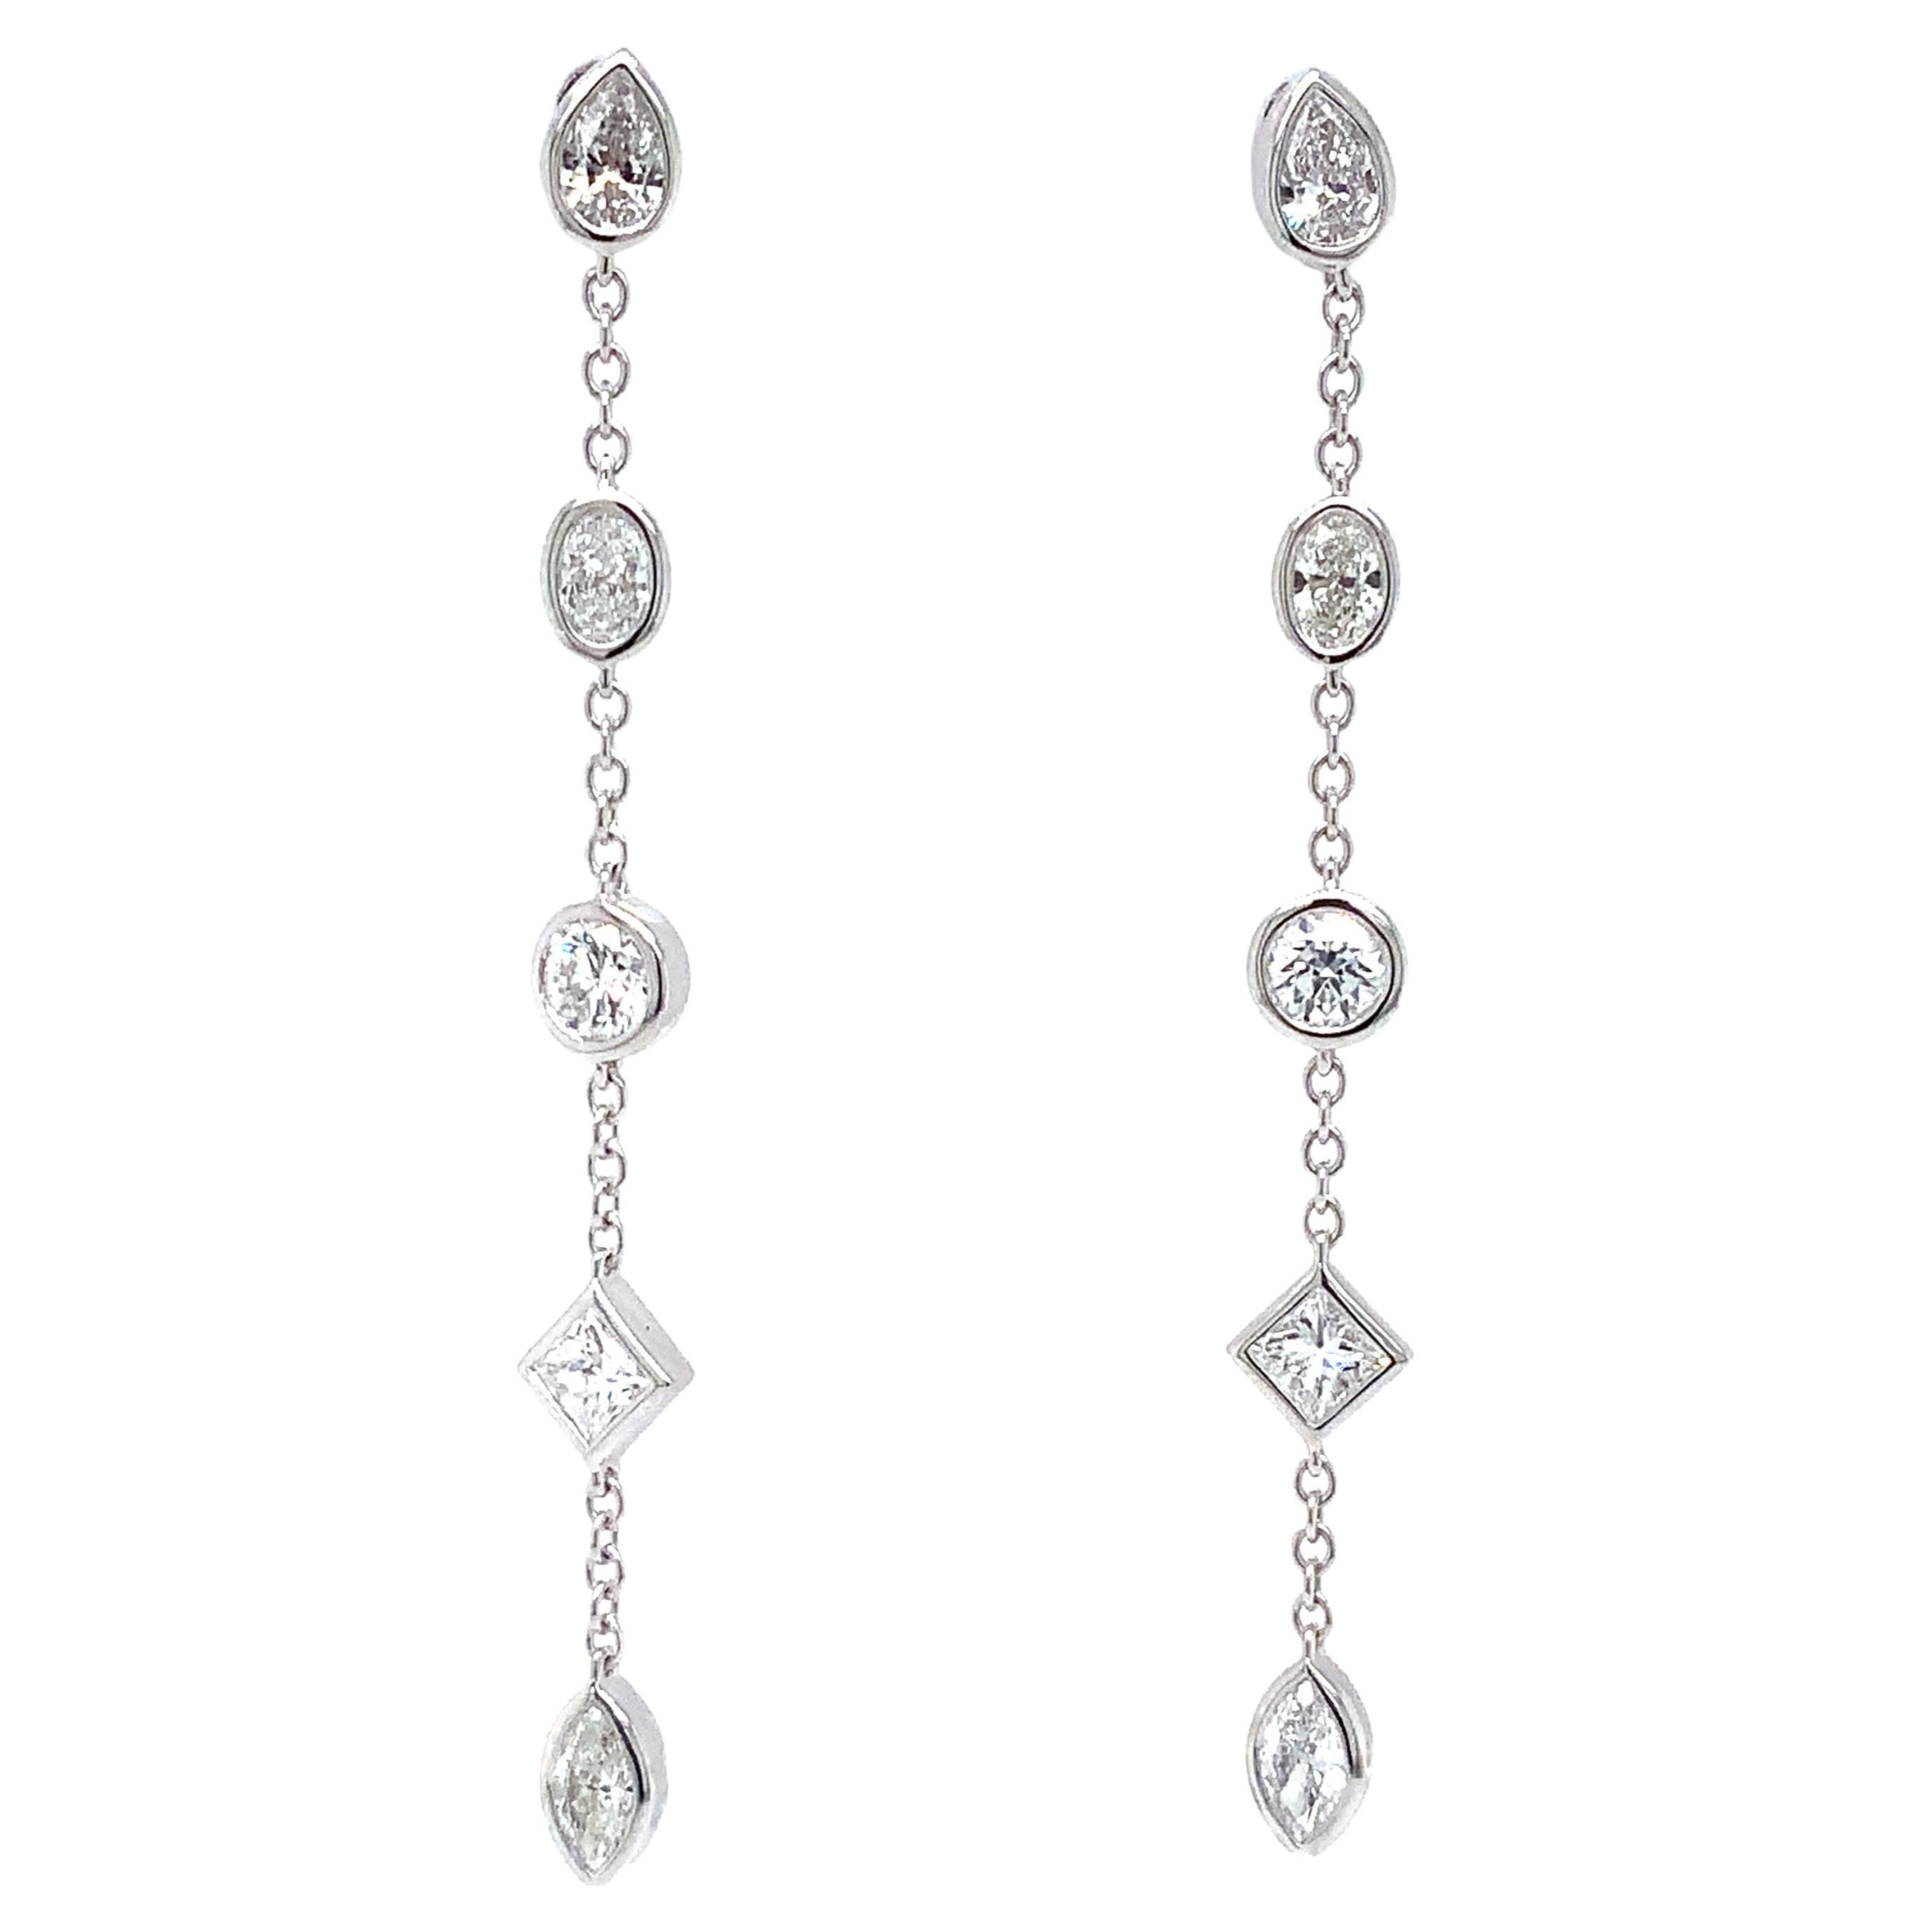 Memoire Cascade Mixed Cut Fancy Shaped Diamond Drop Earrings 18k White Gold